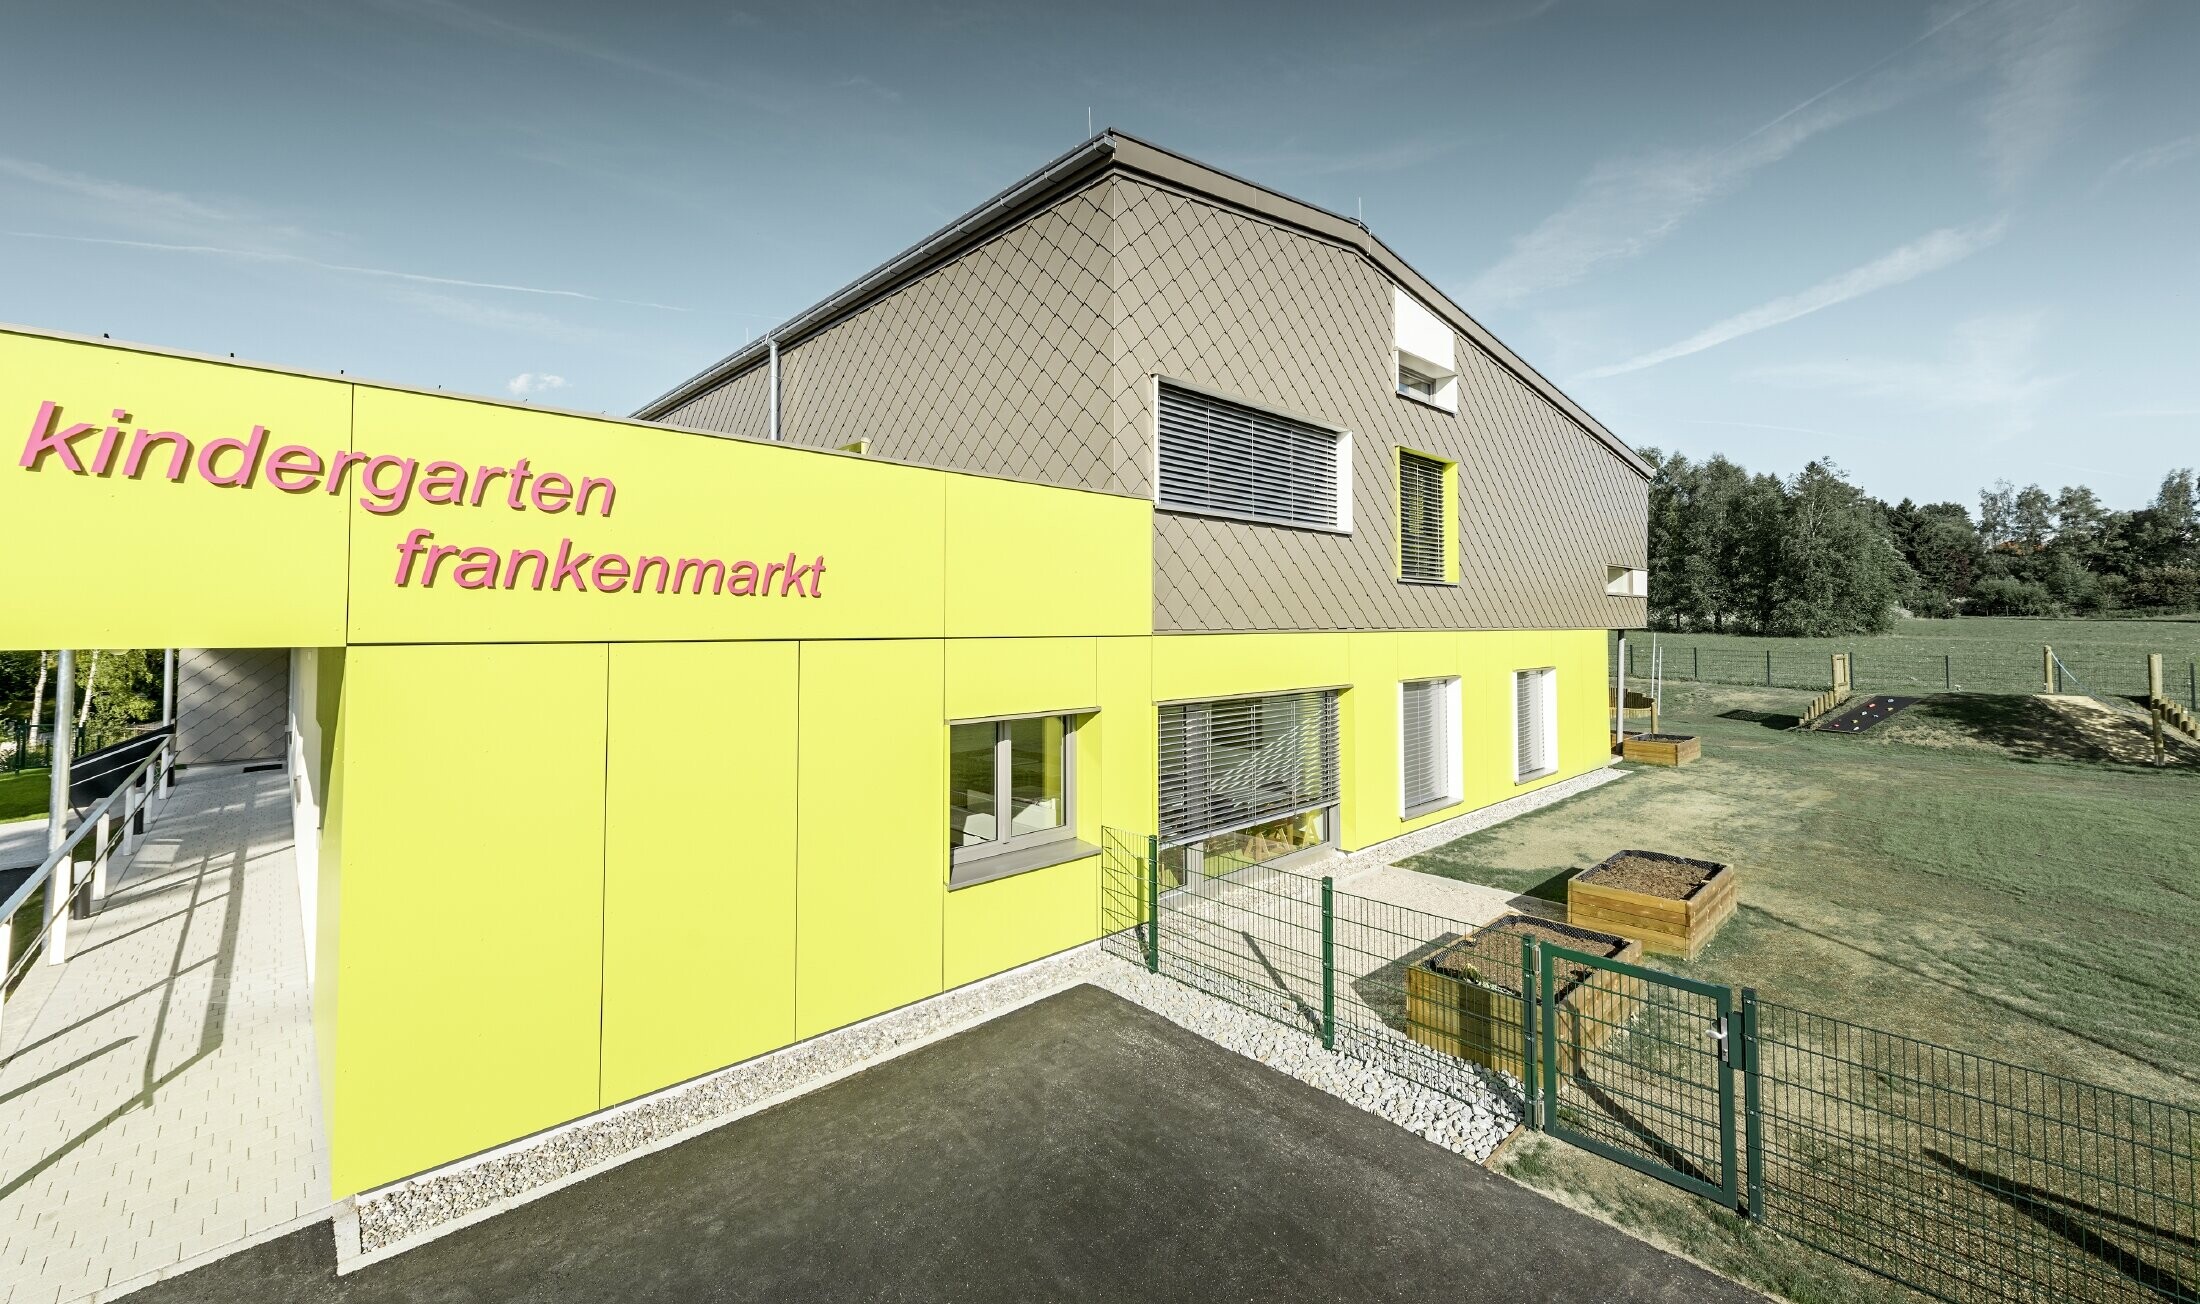 Die Fassade des Kindergarten in Frankenmarkt wurde zum Teil mit der PREFA Wandraute in Bronze verkleidet. Der Rest der Fassade wurde mit Fassadenplatten in Gelb bekleidet. Man erkennt auch den Schriftzug des Kindergartens.